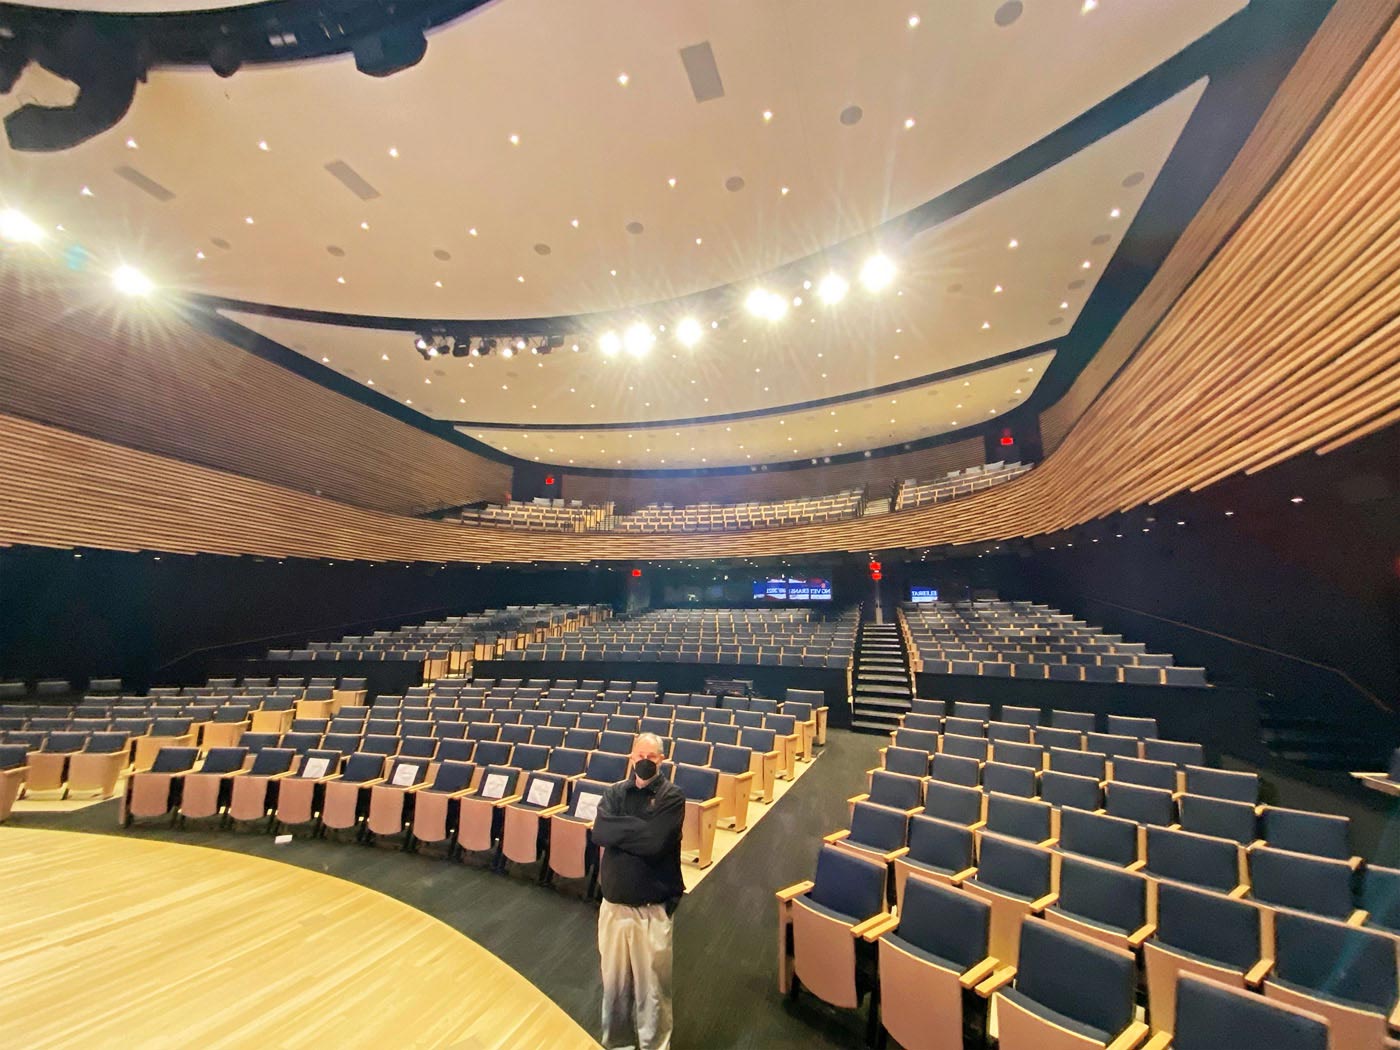 L'auditorium est agencé sur deux niveaux, ce qui permet de maximiser le nombre de places assises pour les événements publics et privés sur invitation uniquement.